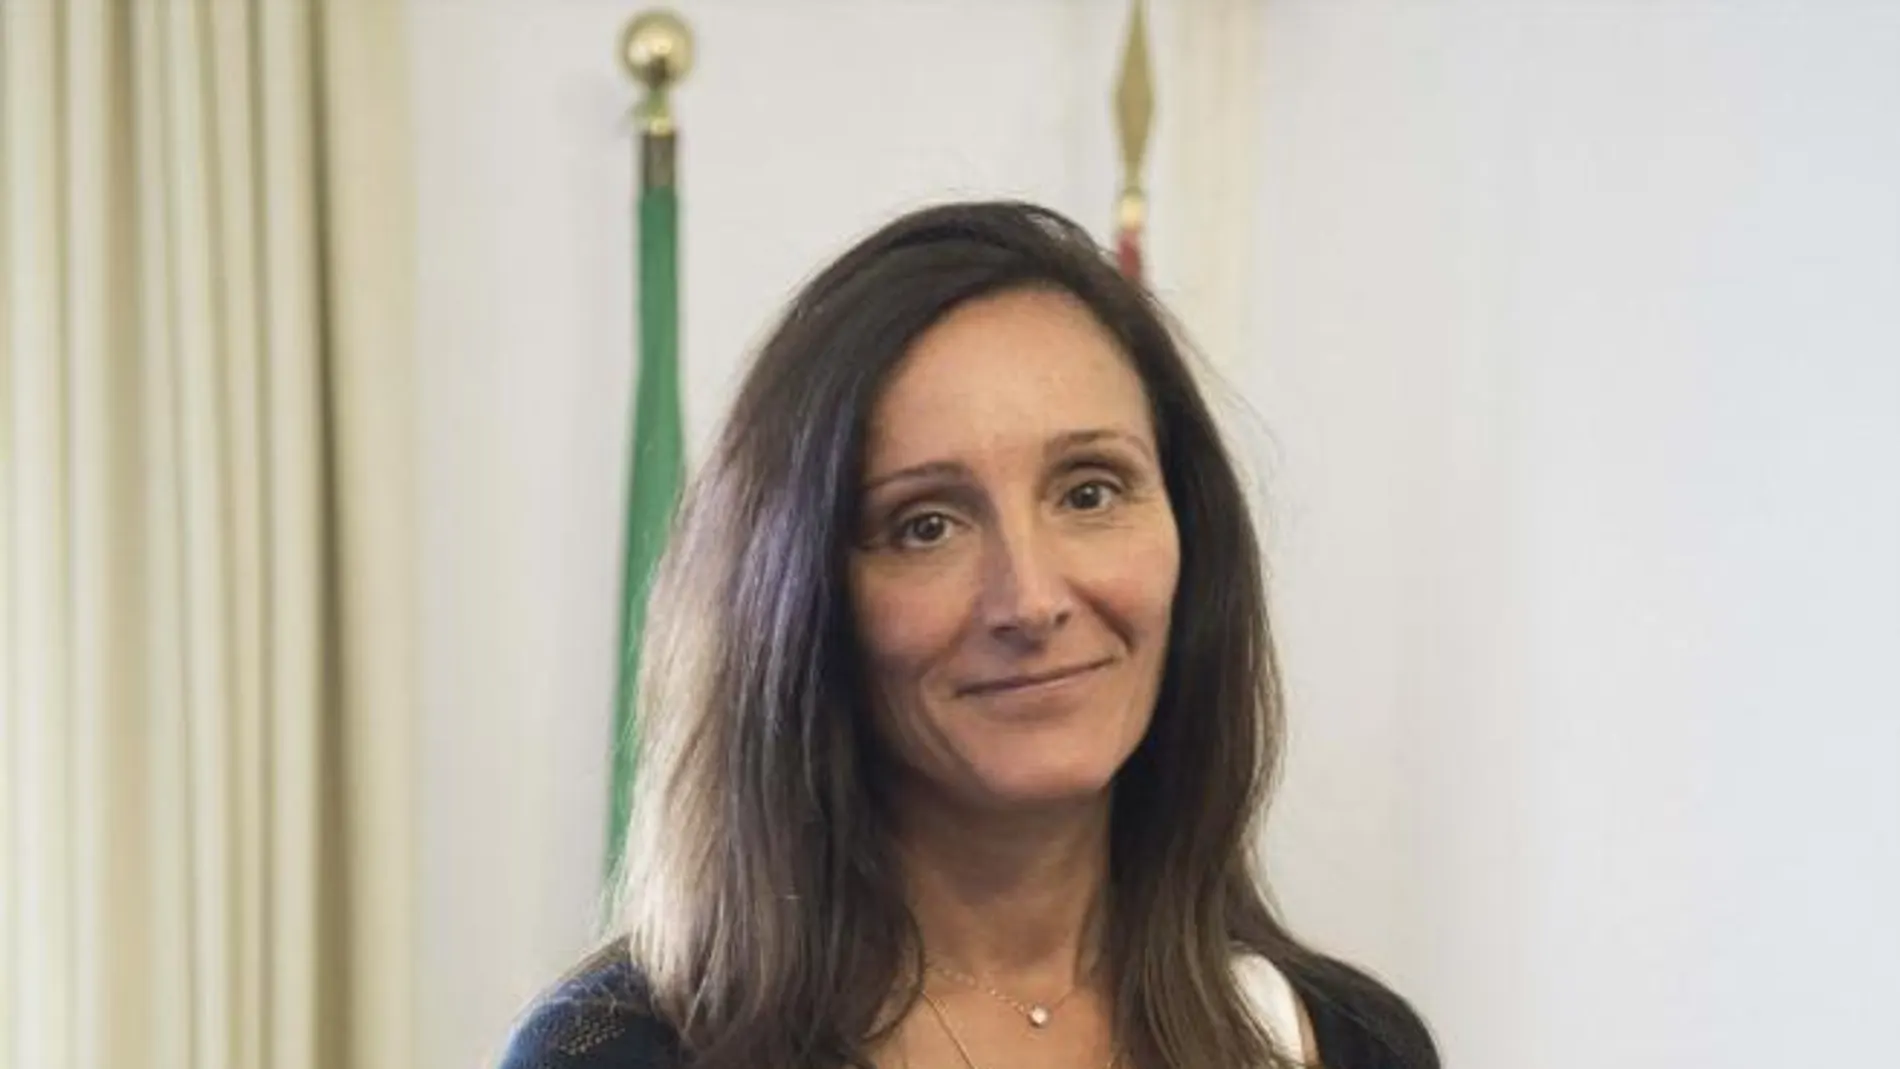 La juez de Instrucción número 6 de Sevilla, María Núñez Bolaños